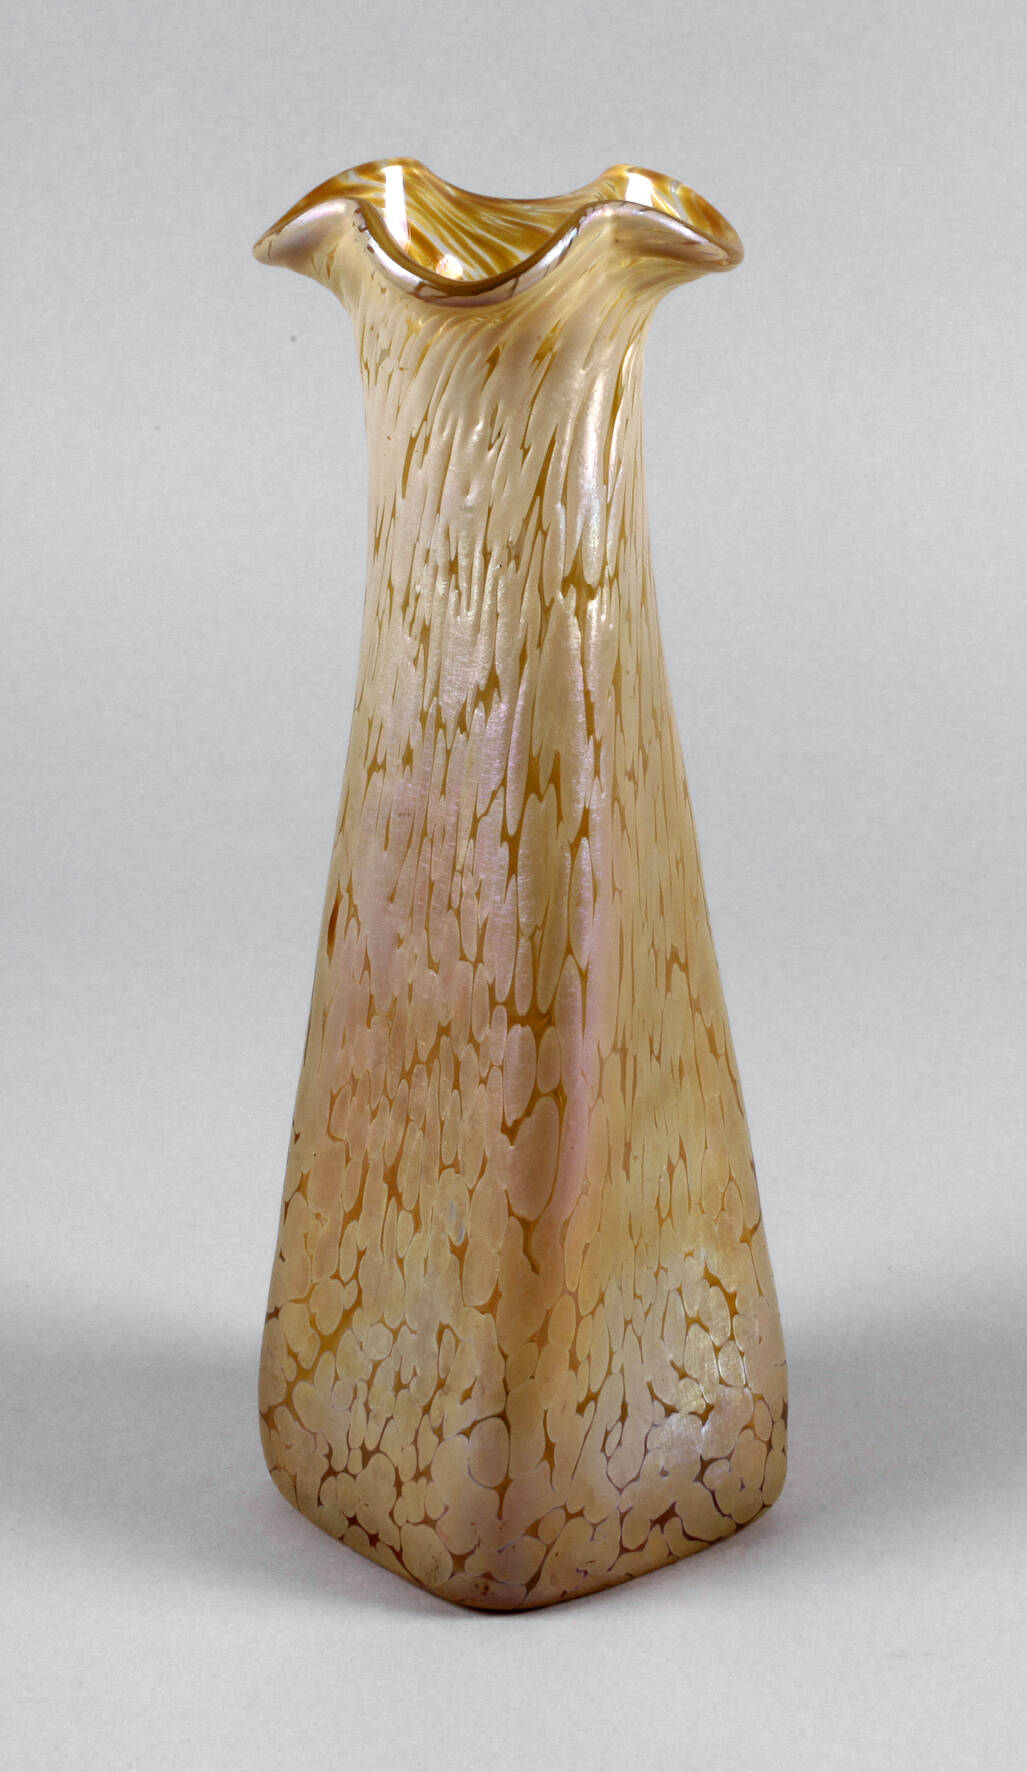 Lötz Wwe. Vase "Candia Papillon" um 1900, farbloses Glas, ausgekugelter Abriss, silbergelbe und lachsfarbene Kröselaufschmelzungen, reduziert und irisiert, die Mündung vierfach gelappt, im Schulterberreich verdreht, guter Originalzustand, H 29 cm.